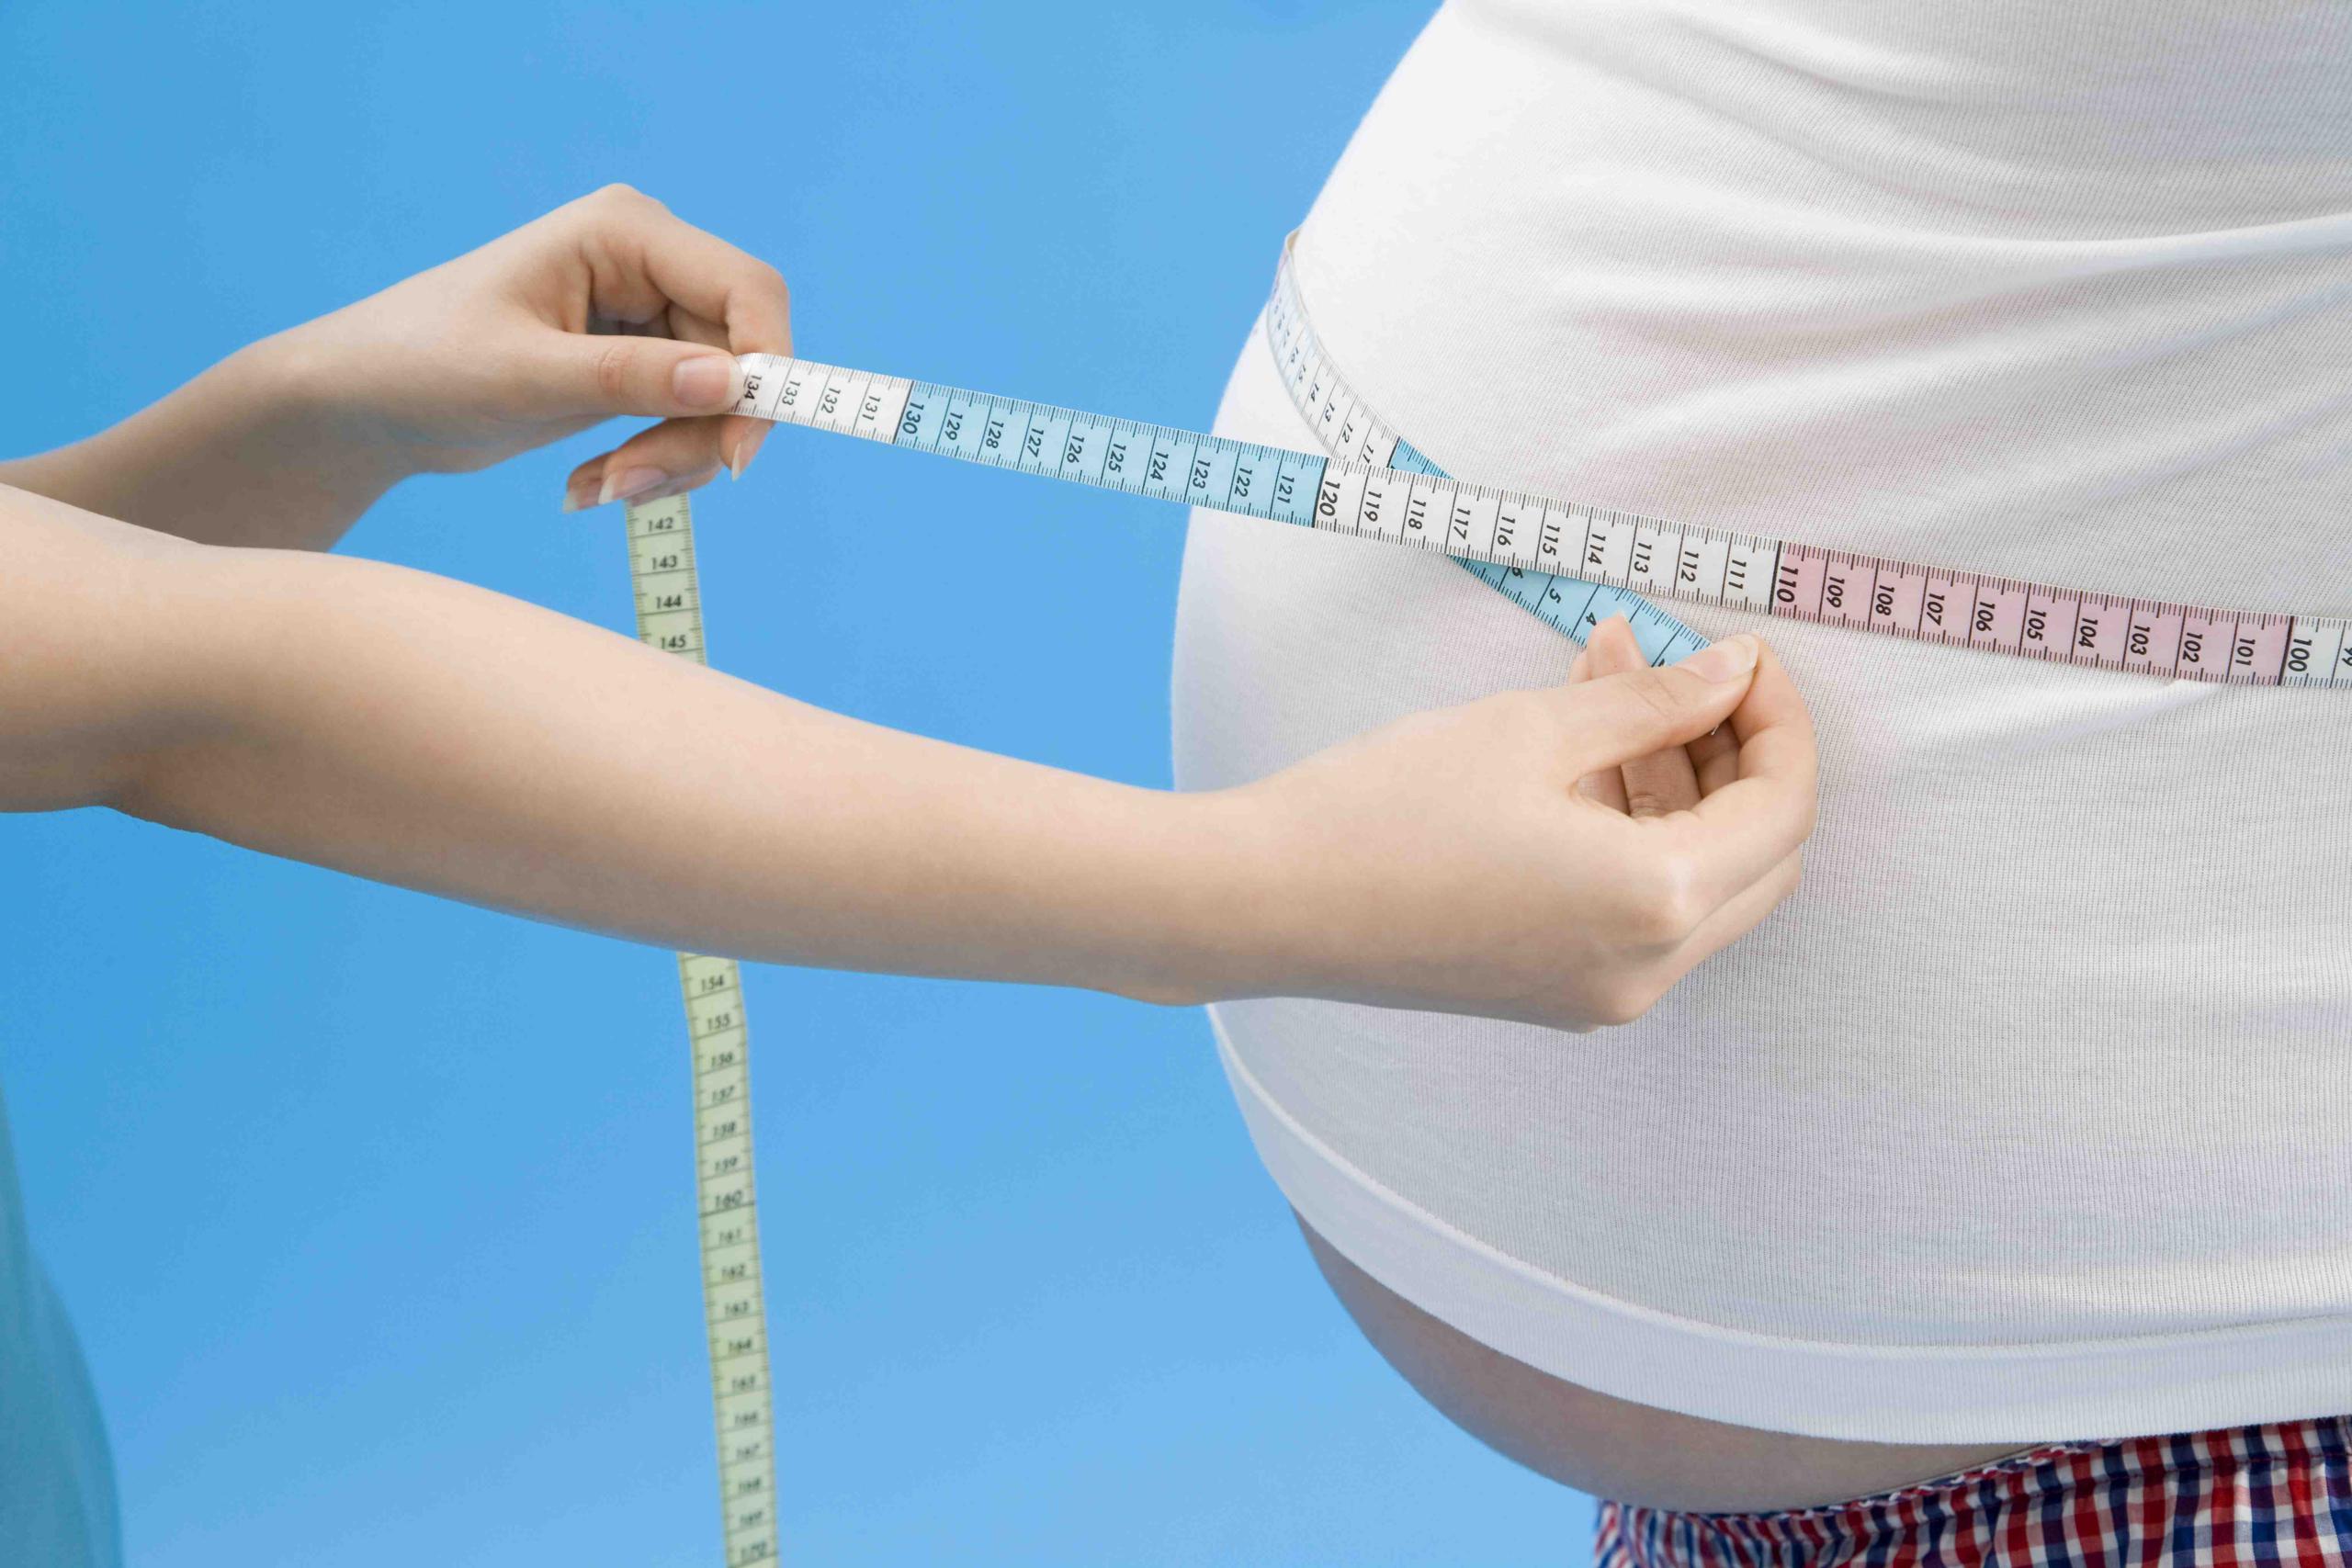 La prevalencia de la obesidad continúa aumentando, pese a la educación, a los esfuerzos en pos de la alimentación y el ejercicio, y las terapias farmacológicas y quirúrgicas. (Shutterstock.com